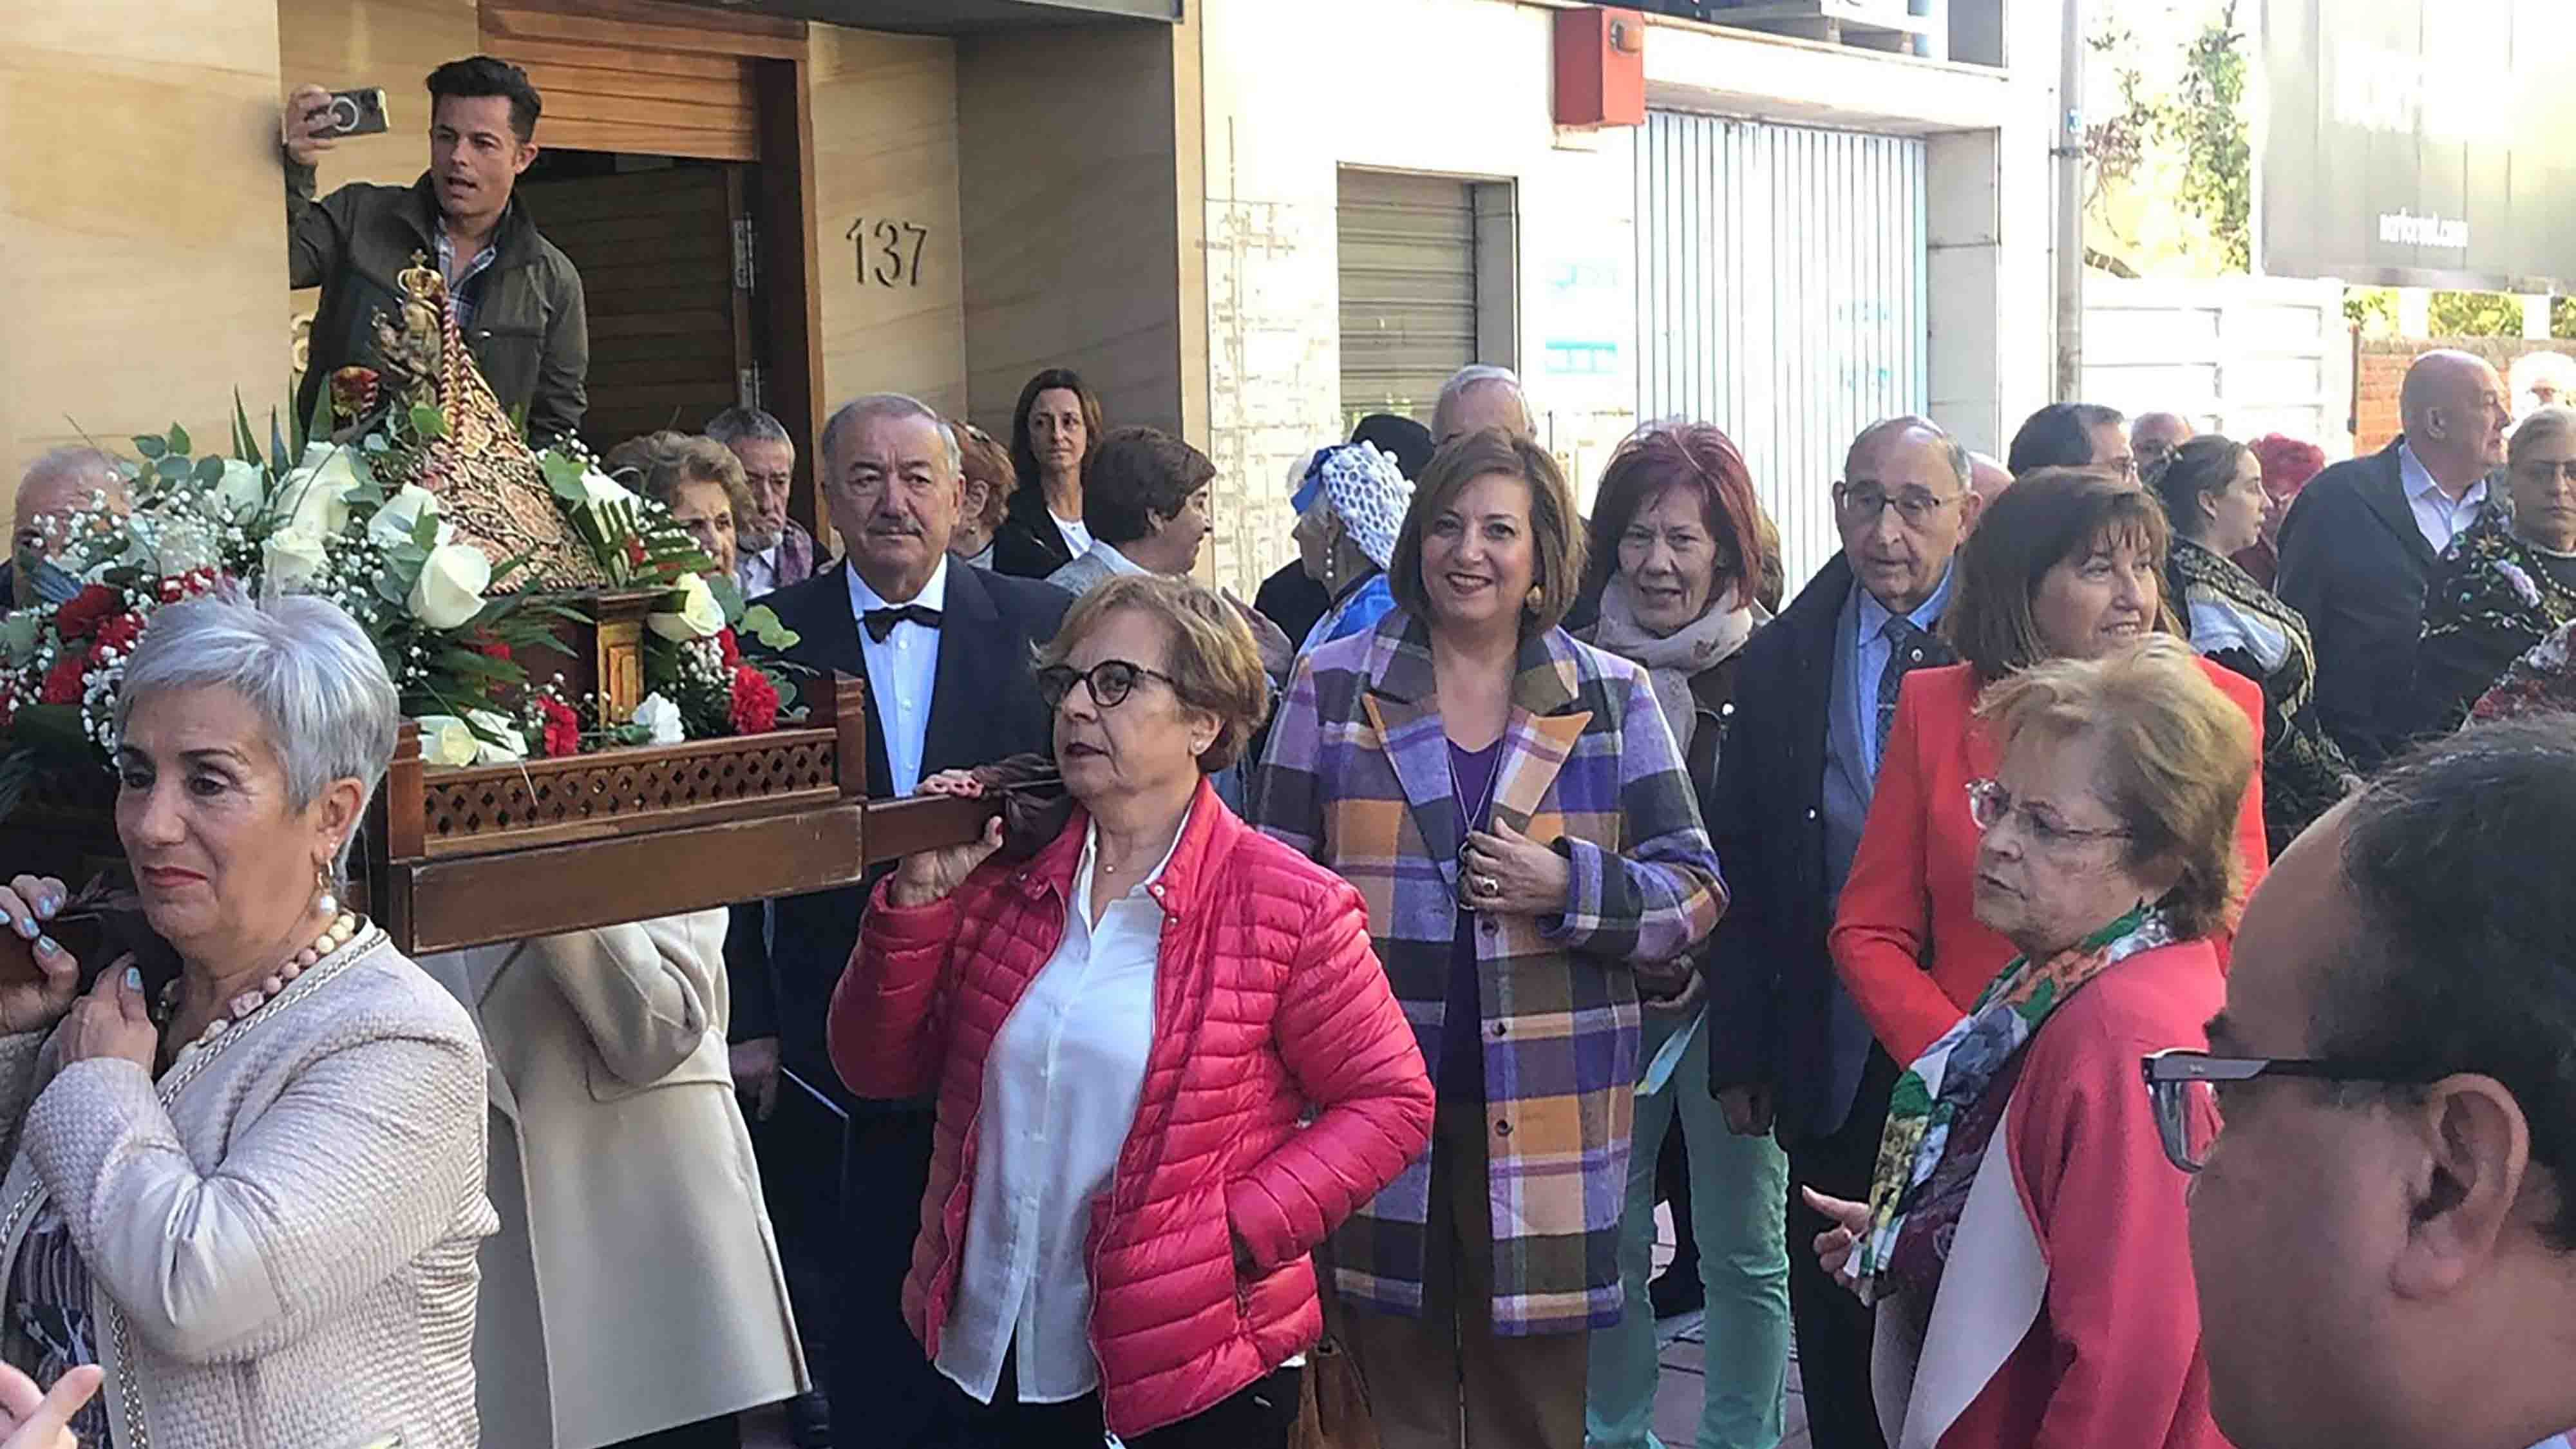 Celebración casa de cantabria en Valladolid.
Rosa Valdés